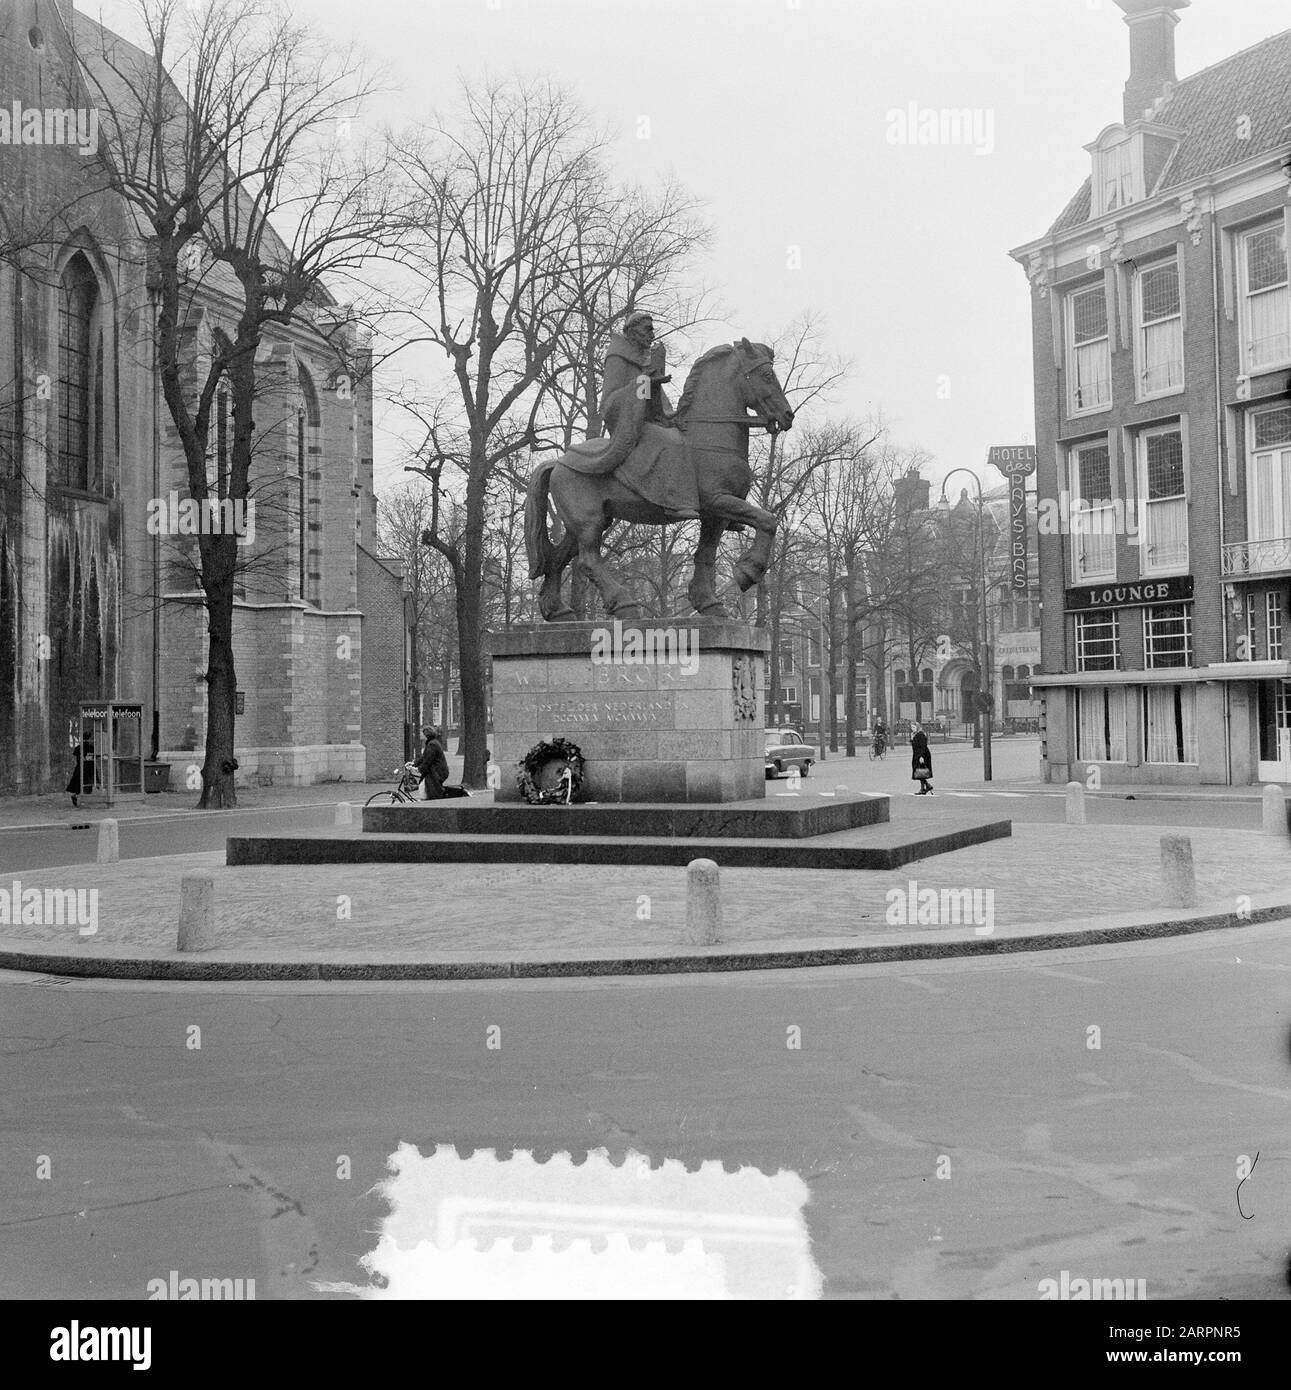 City views Utrecht. Statue of Willibrord at the Lange Jansstraat - Korte Jansstraat - Janskerkhof. Links the Janskerk Date: 19 January 1954 Location: Utrecht Keywords: buildings, cityscapes, statues Stock Photo